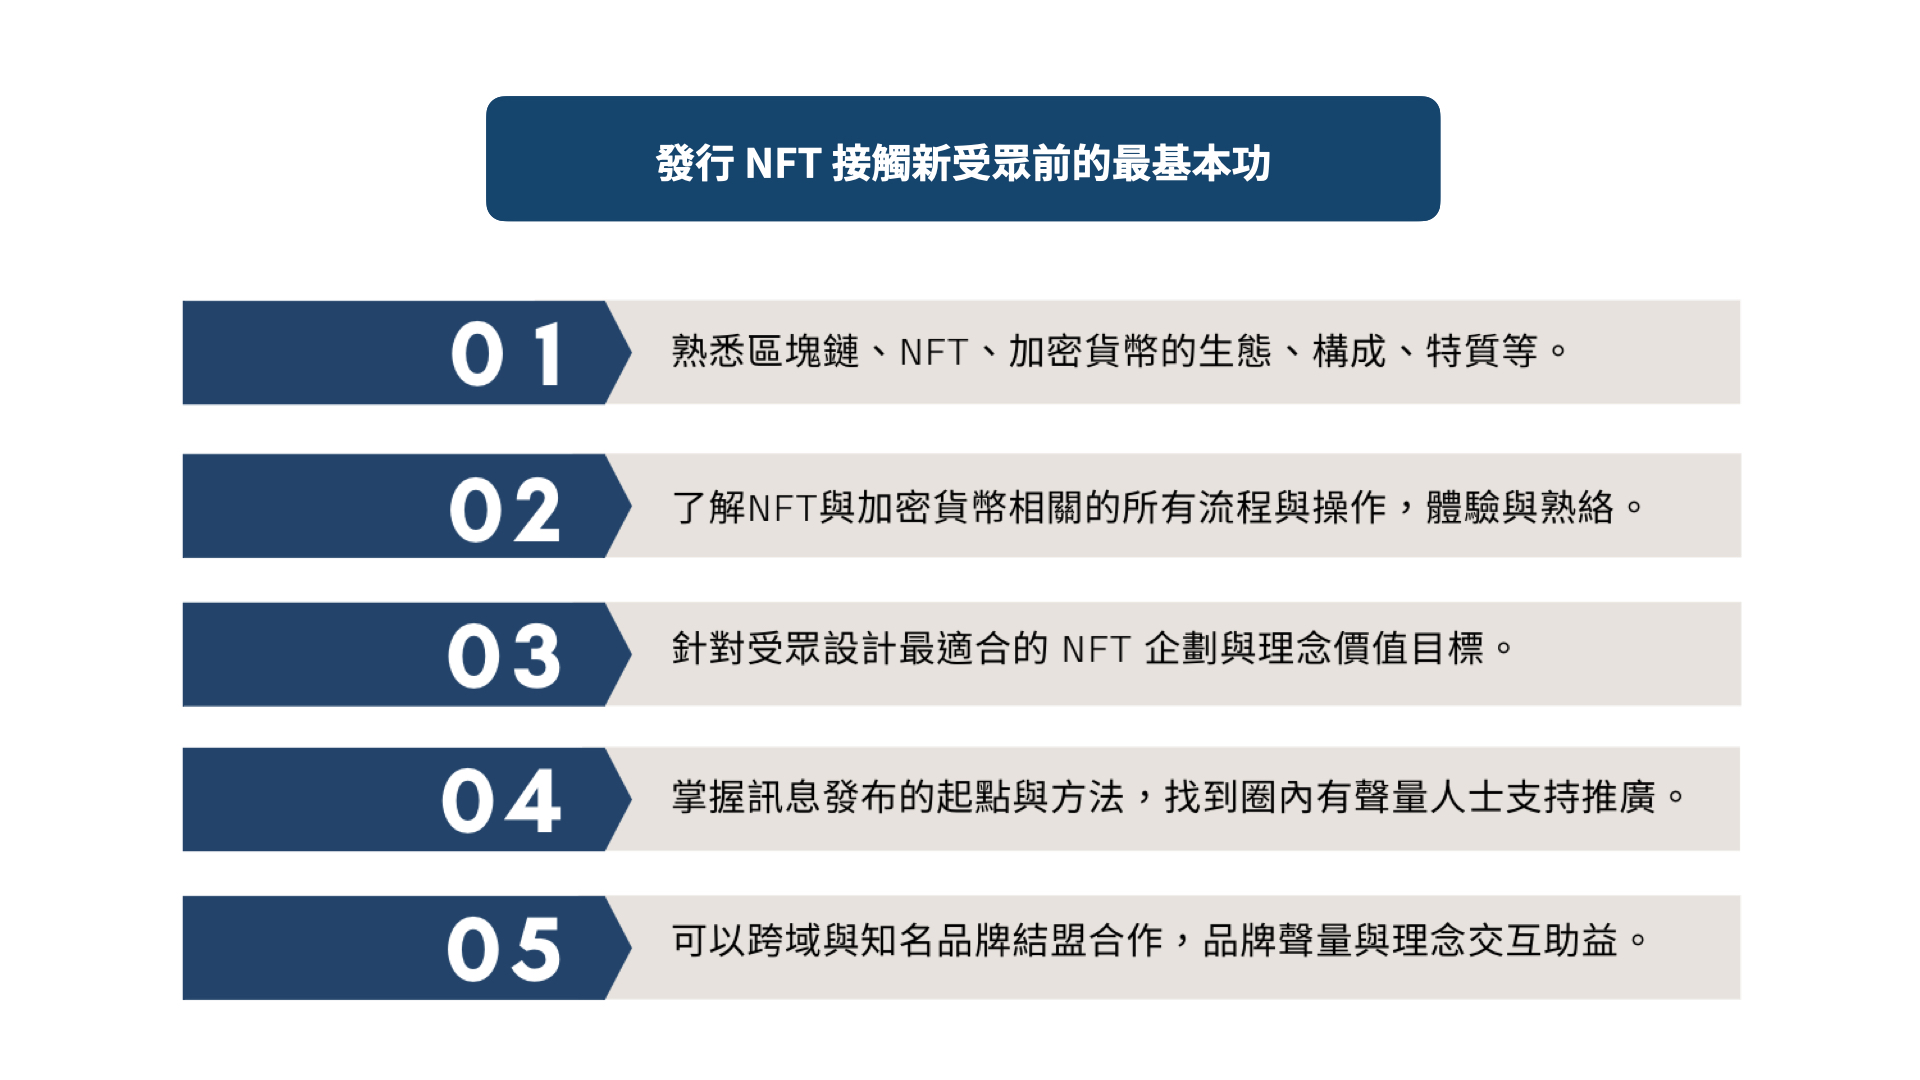 發行 NFT 接觸新受眾的基本功